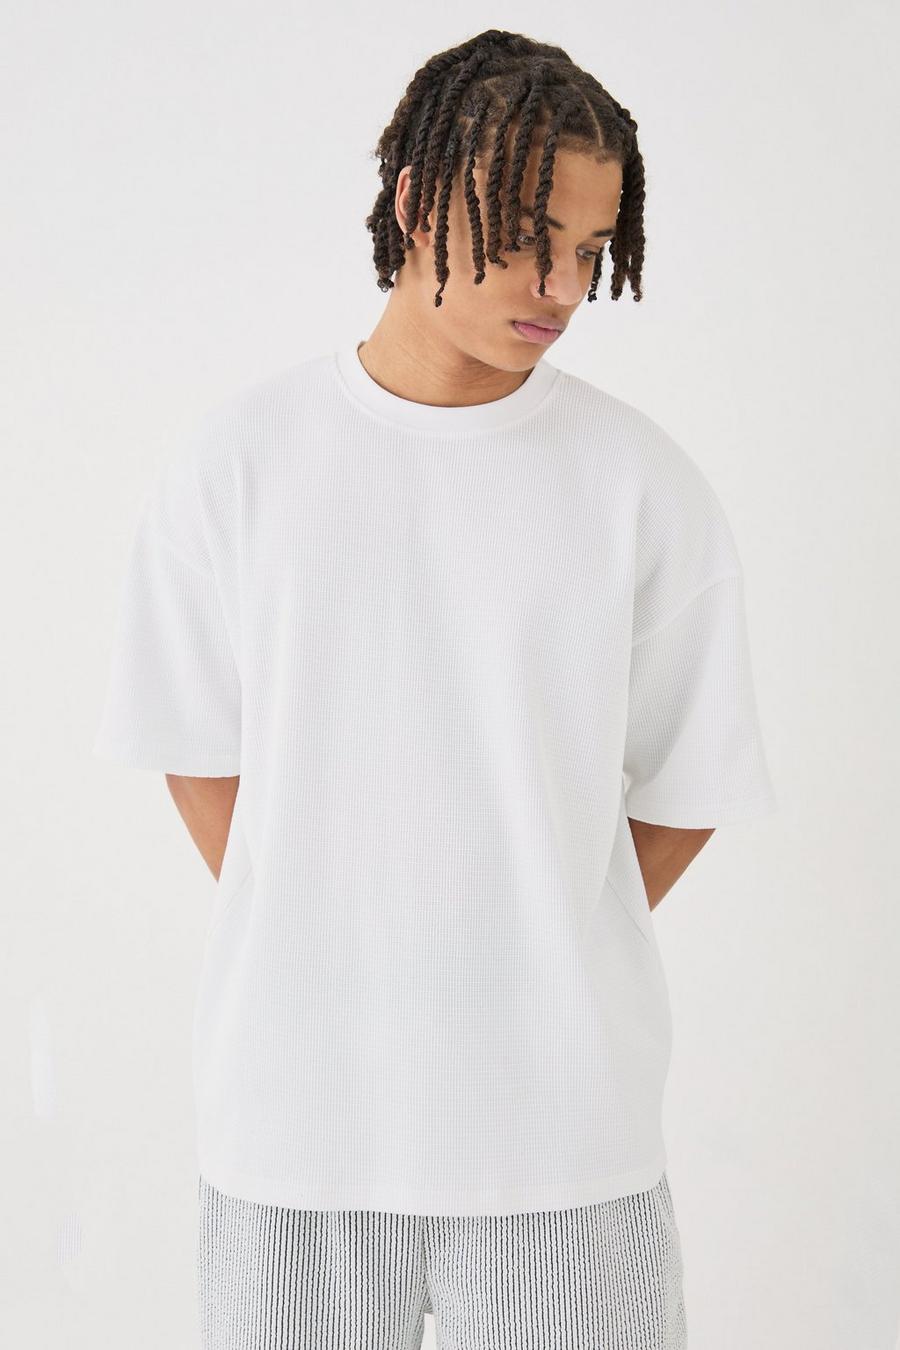 Camiseta oversize de tela gofre, White image number 1